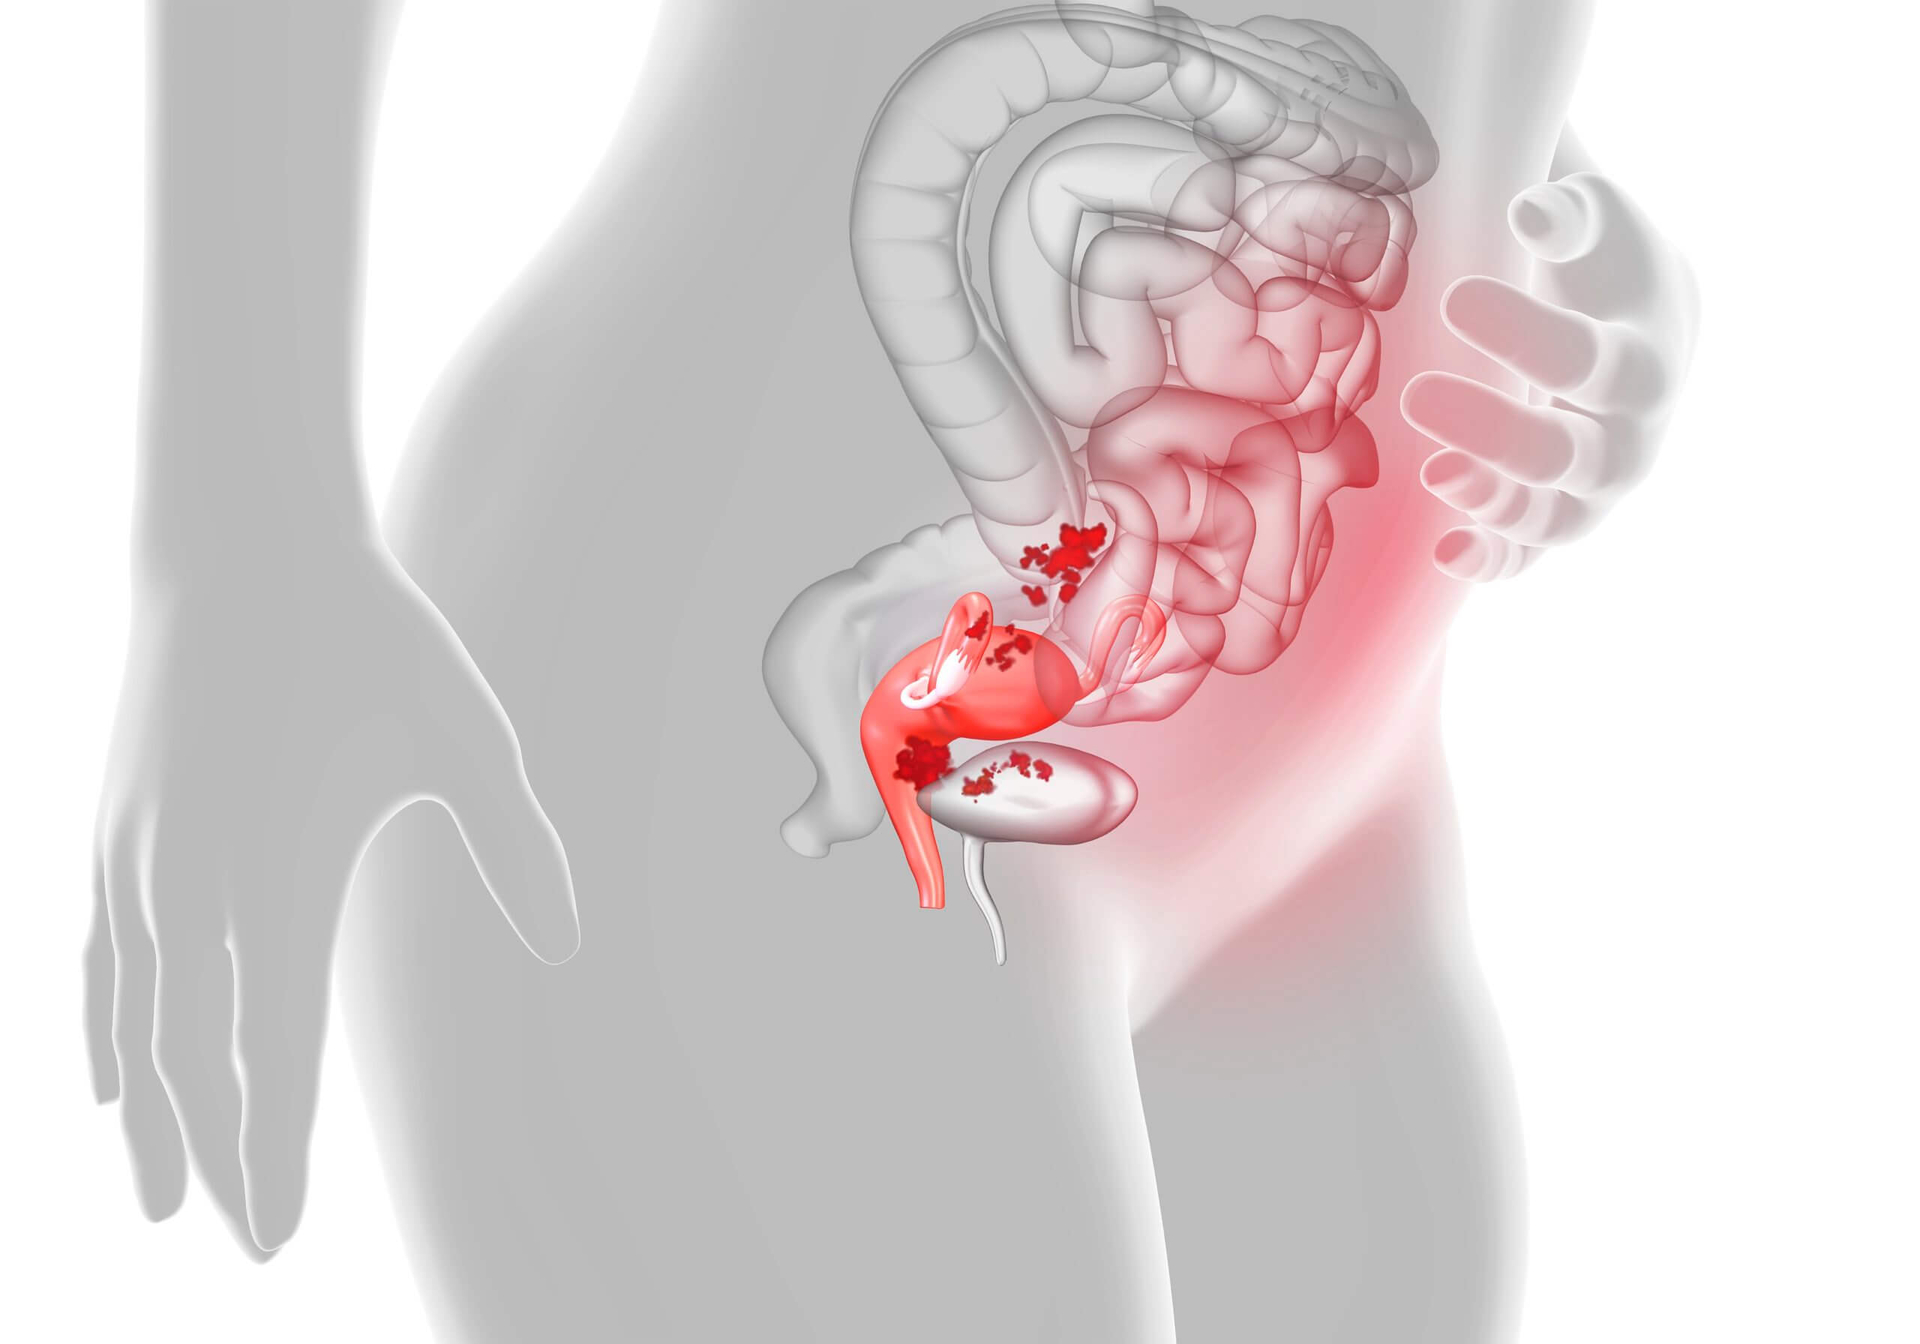 Endometrioza: Shkaqet, Simptomat, Diagnoza dhe Trajtimi